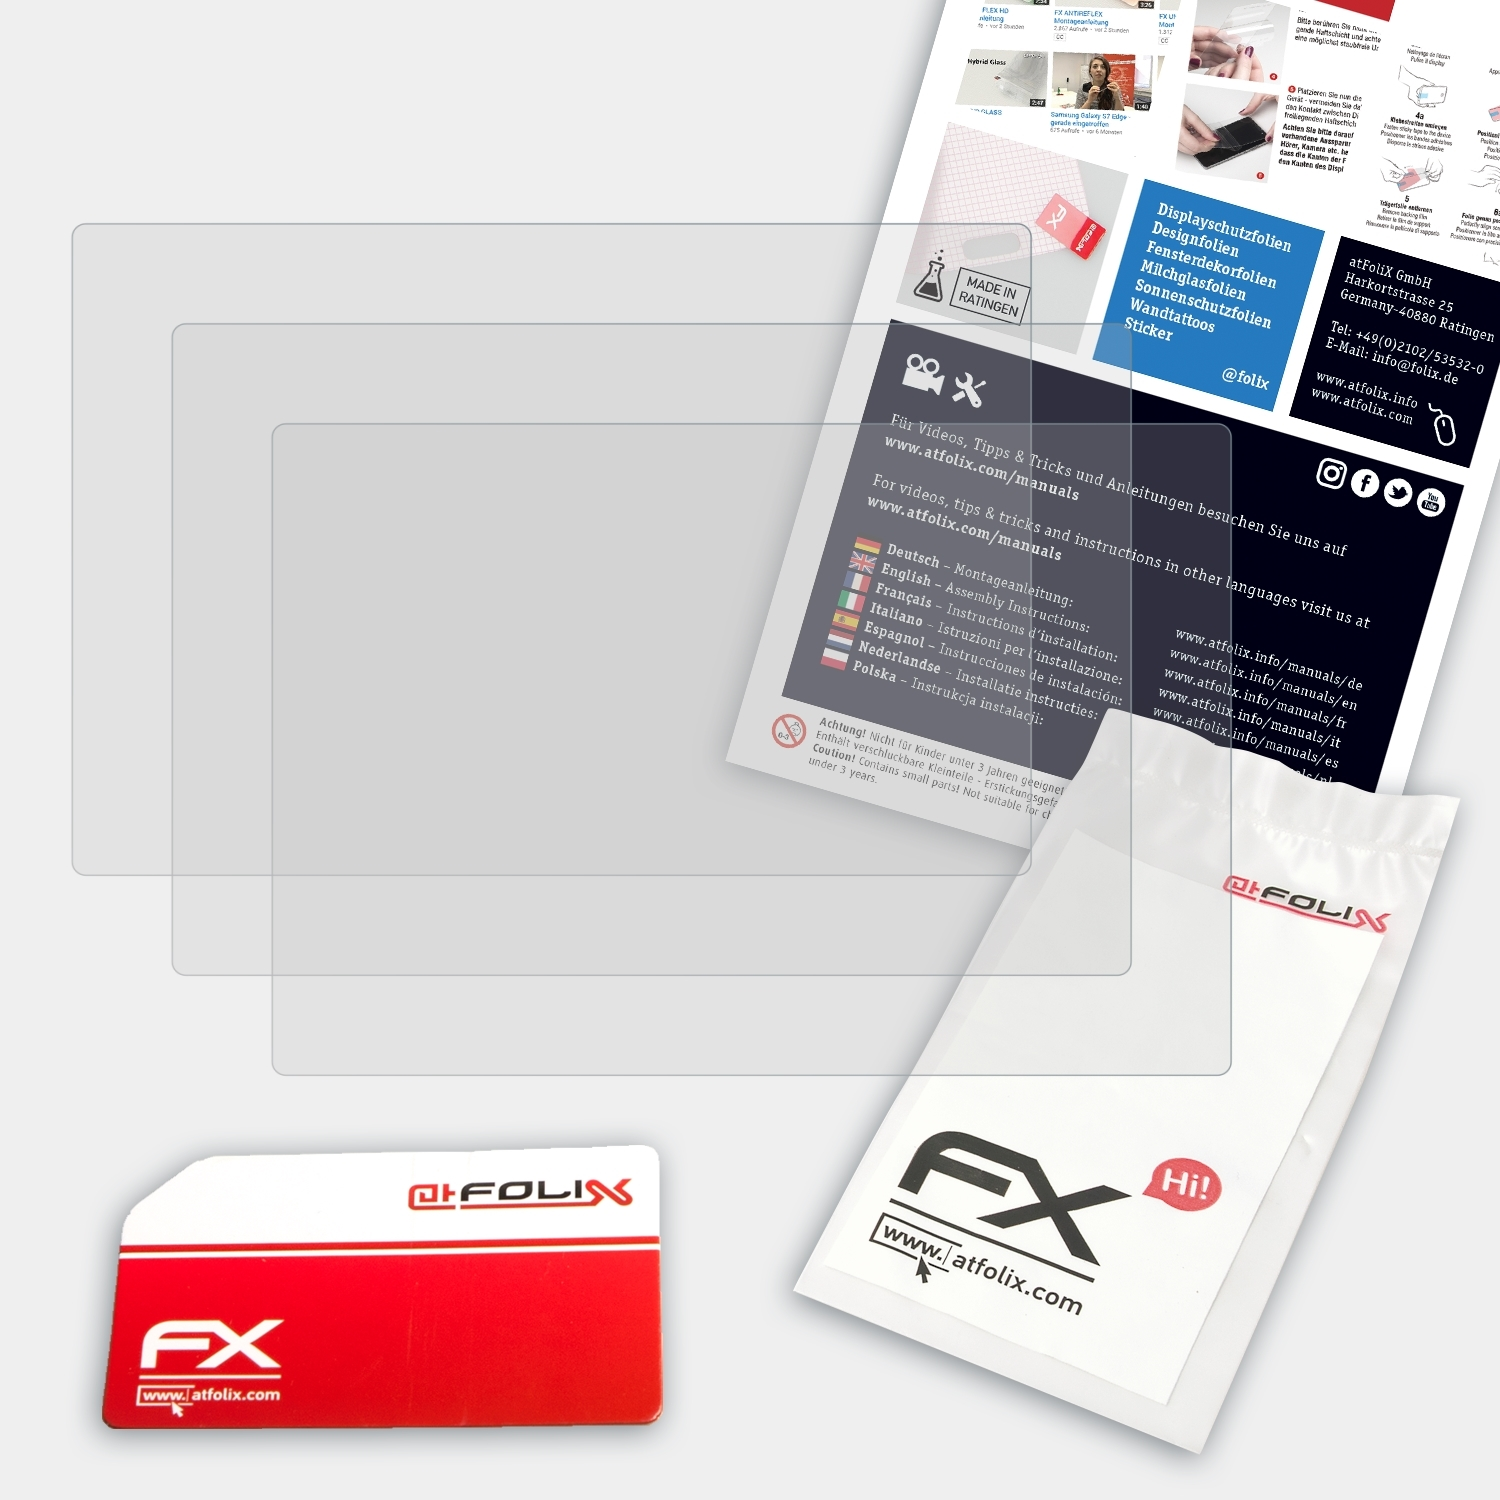 3x ATFOLIX Lumix Displayschutz(für FX-Antireflex Panasonic DMC-SZ8)